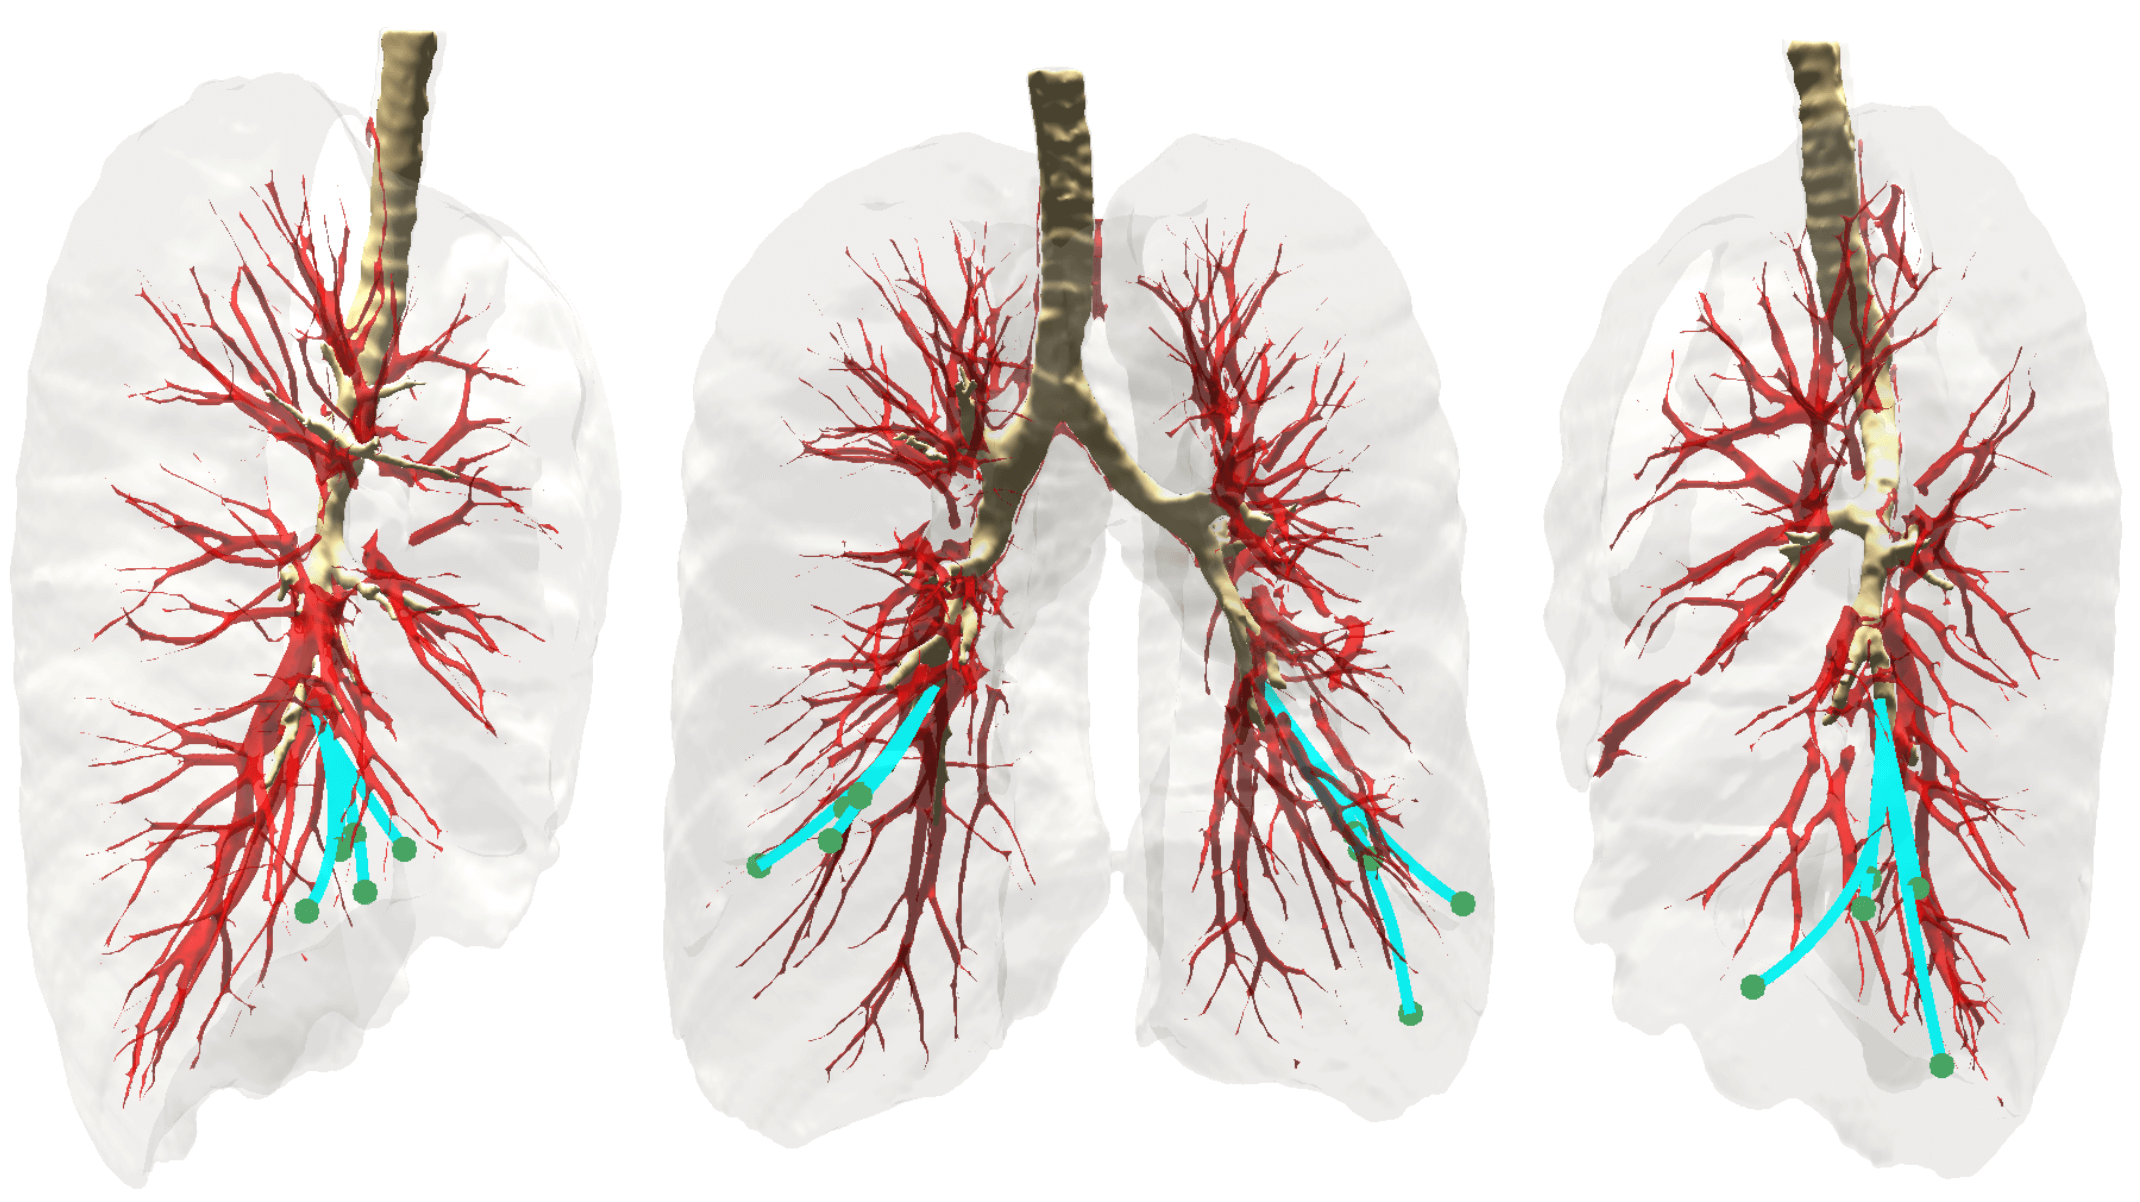 באיור: שלושה מבטים על ביופסיה של הריאה בטכנולוגיה החדשה. המחטים (בירוק) נעות אל המטרה תוך עקיפה של מכשולים אנטומיים ובהם כלי דם גדולים (באדום), רקמת הריאה (באפור) והסמפונות (בחום) – הצינורות המחברים את קנה הנשימה לריאות. פרופ' אורן זלצמן, הטכניון